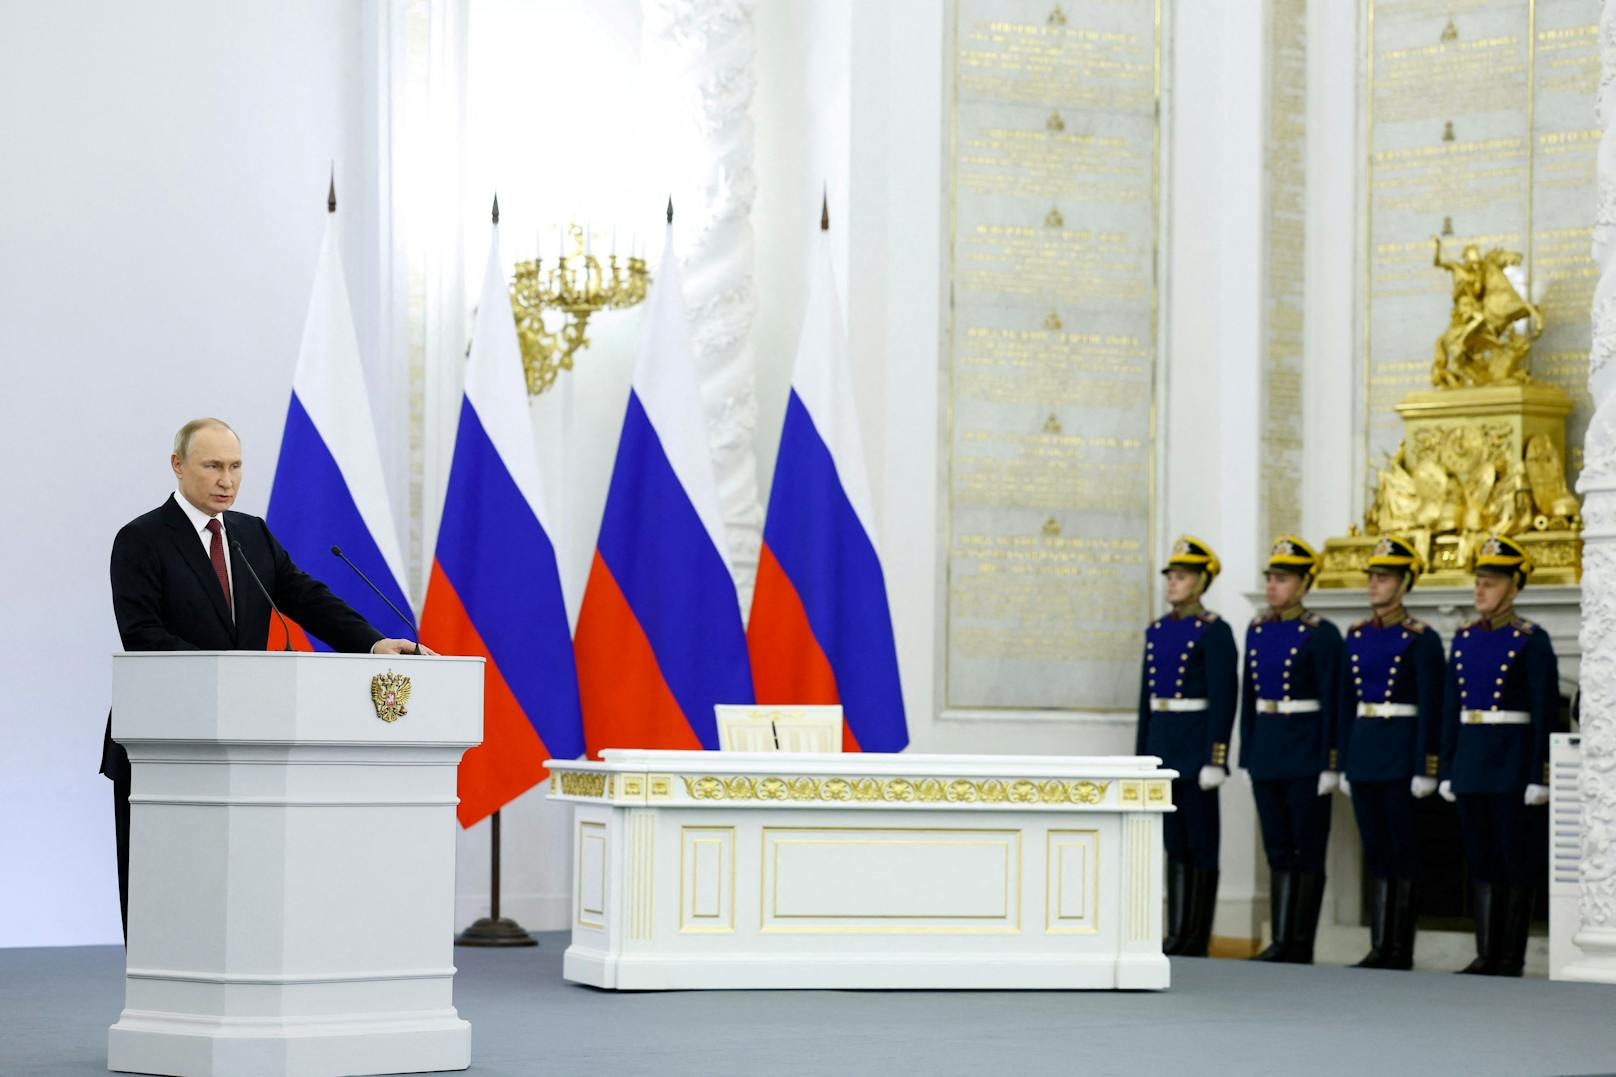 Die Zeremonie wurde live übertragen aus dem Kreml-Palast in Moskau.